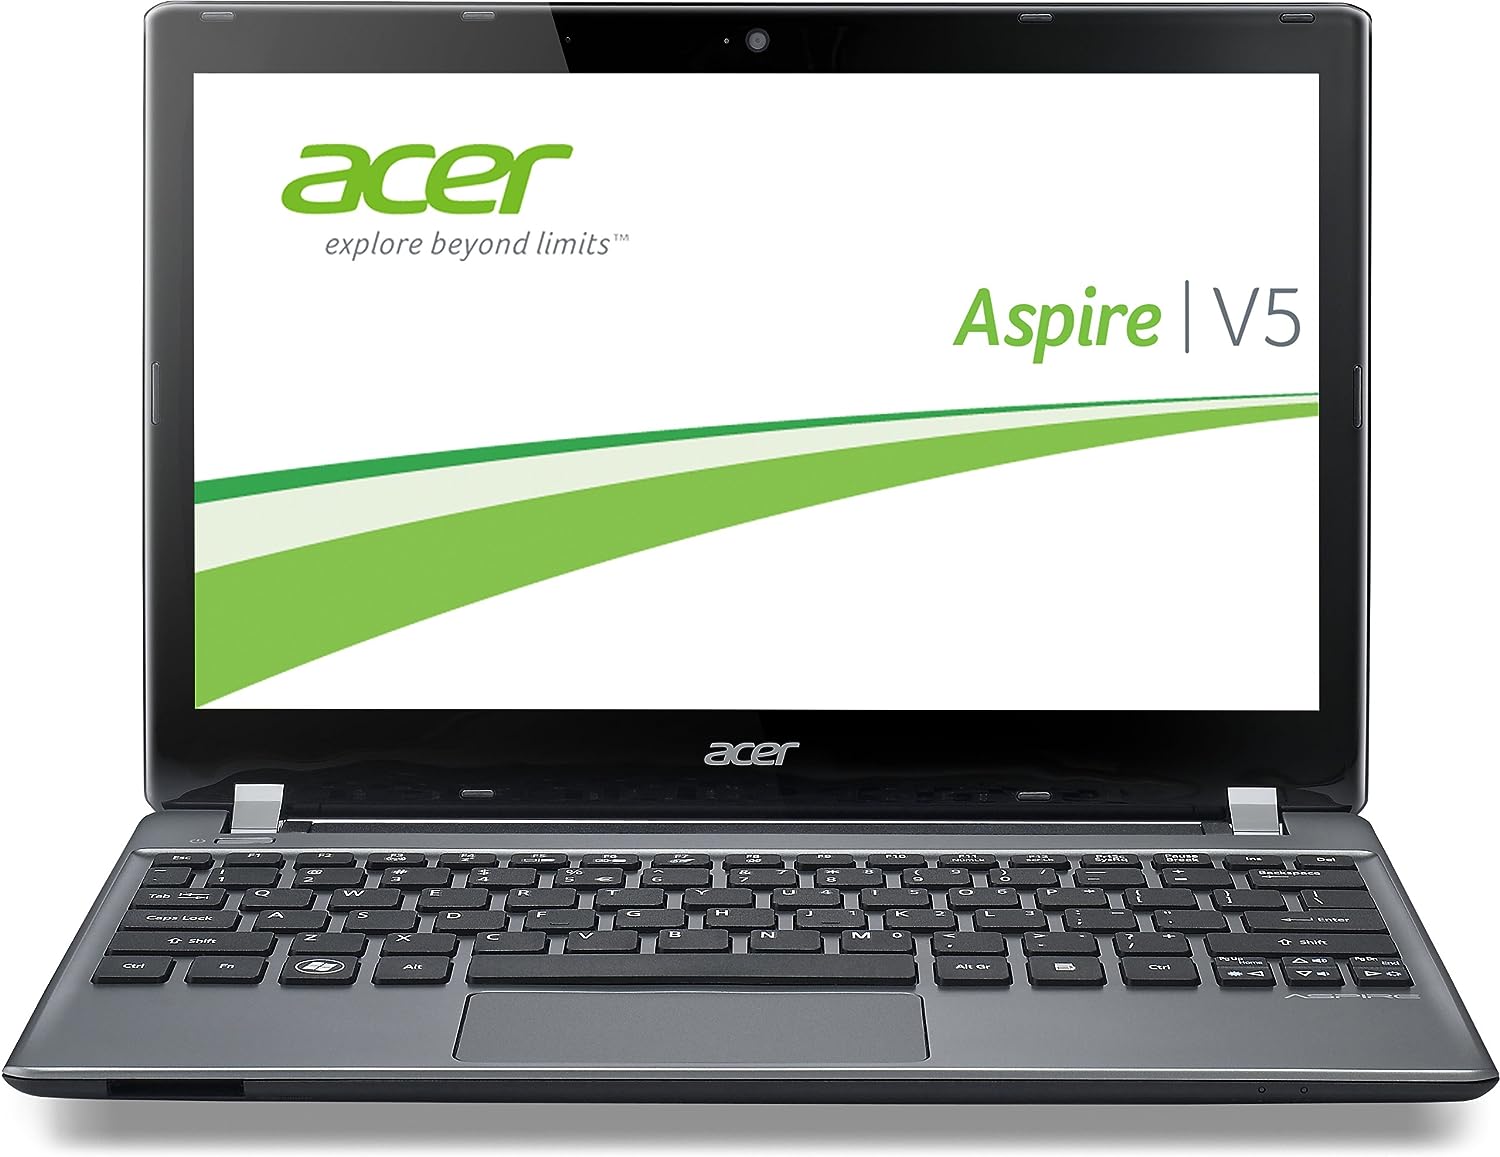 Acer Aspire V5-561PG Notebook